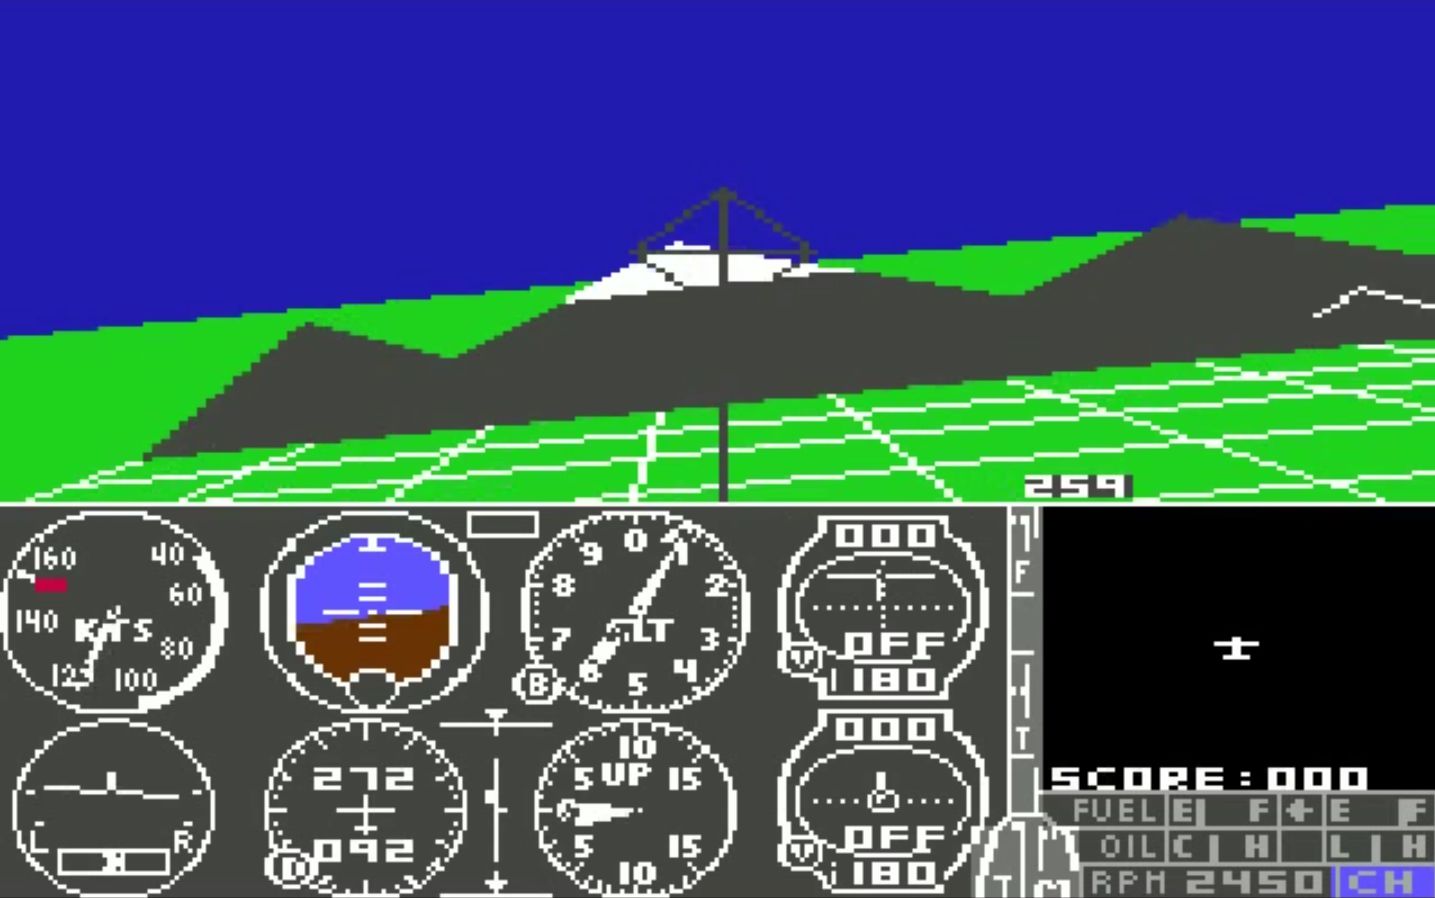 Resultado de imagen para flight simulator commodore 64